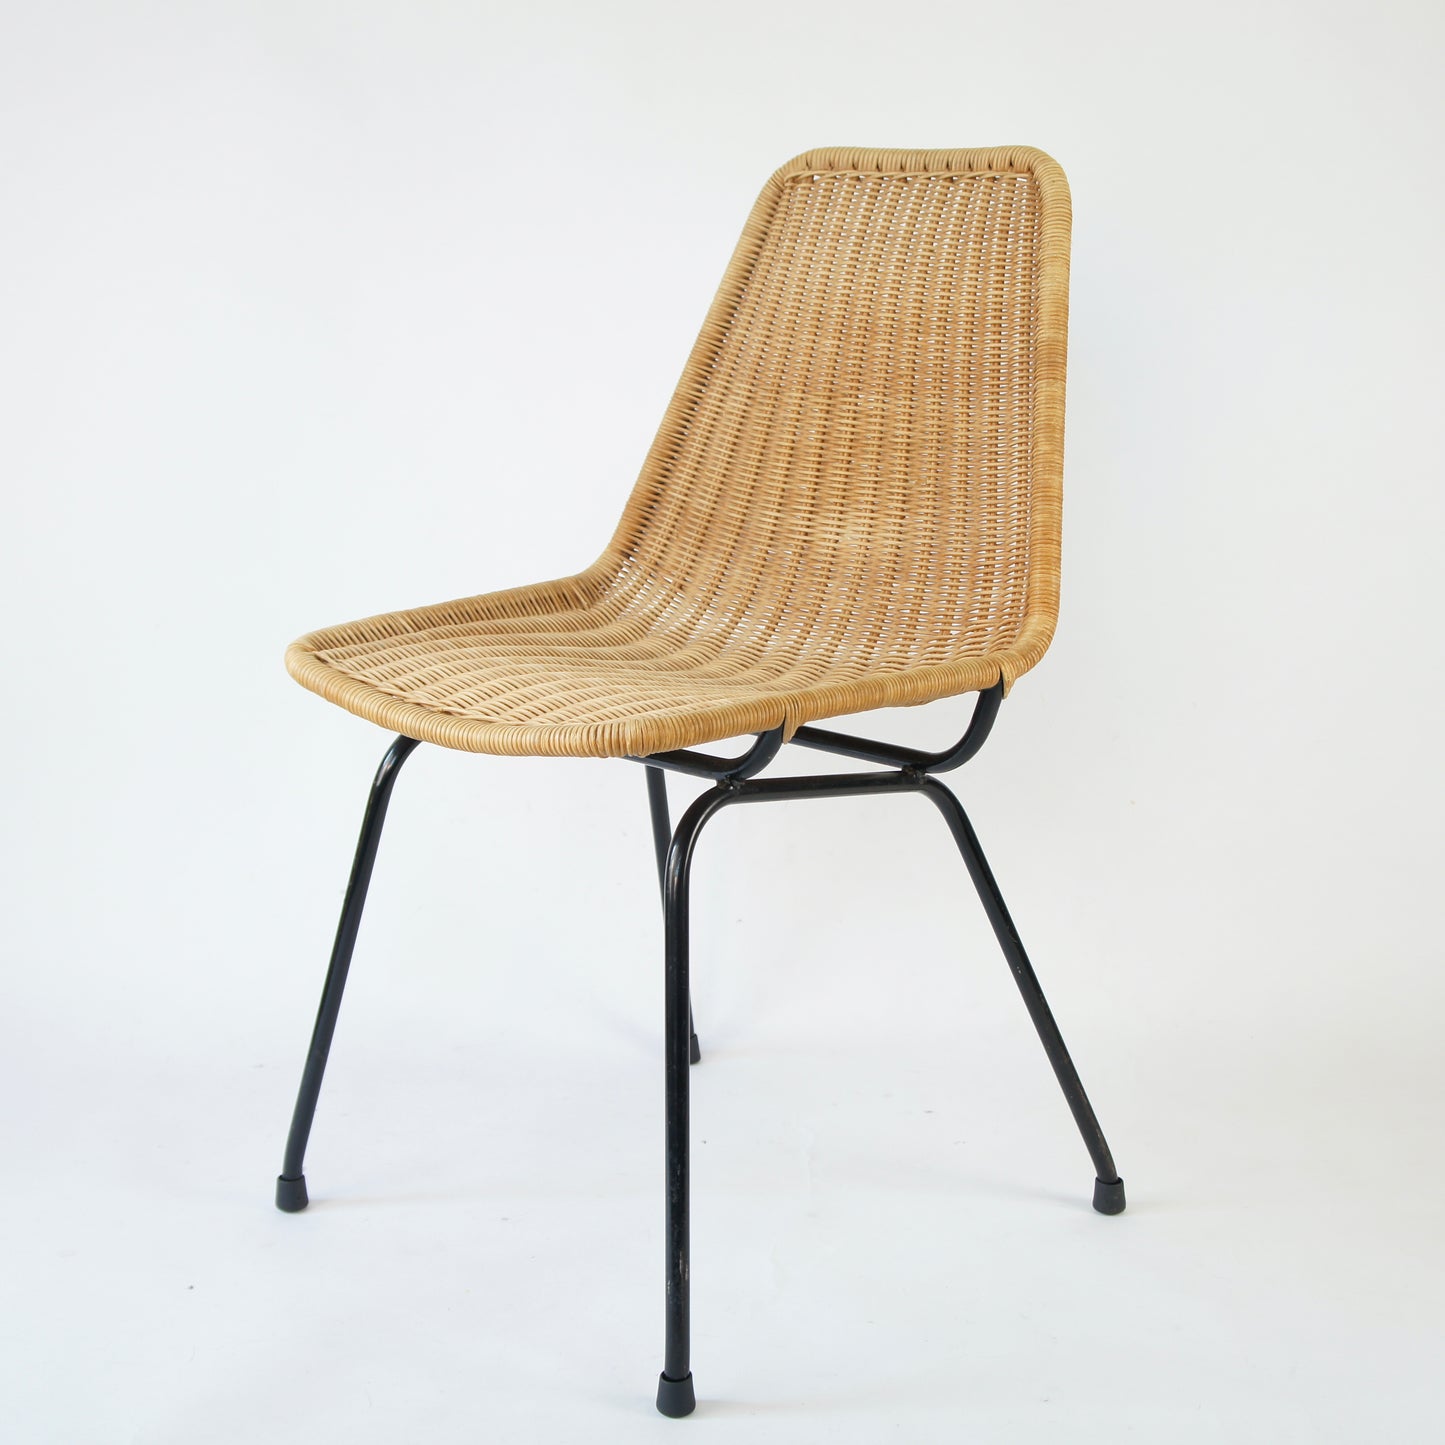 Ratan Chair by Dirk Van Sliedregt